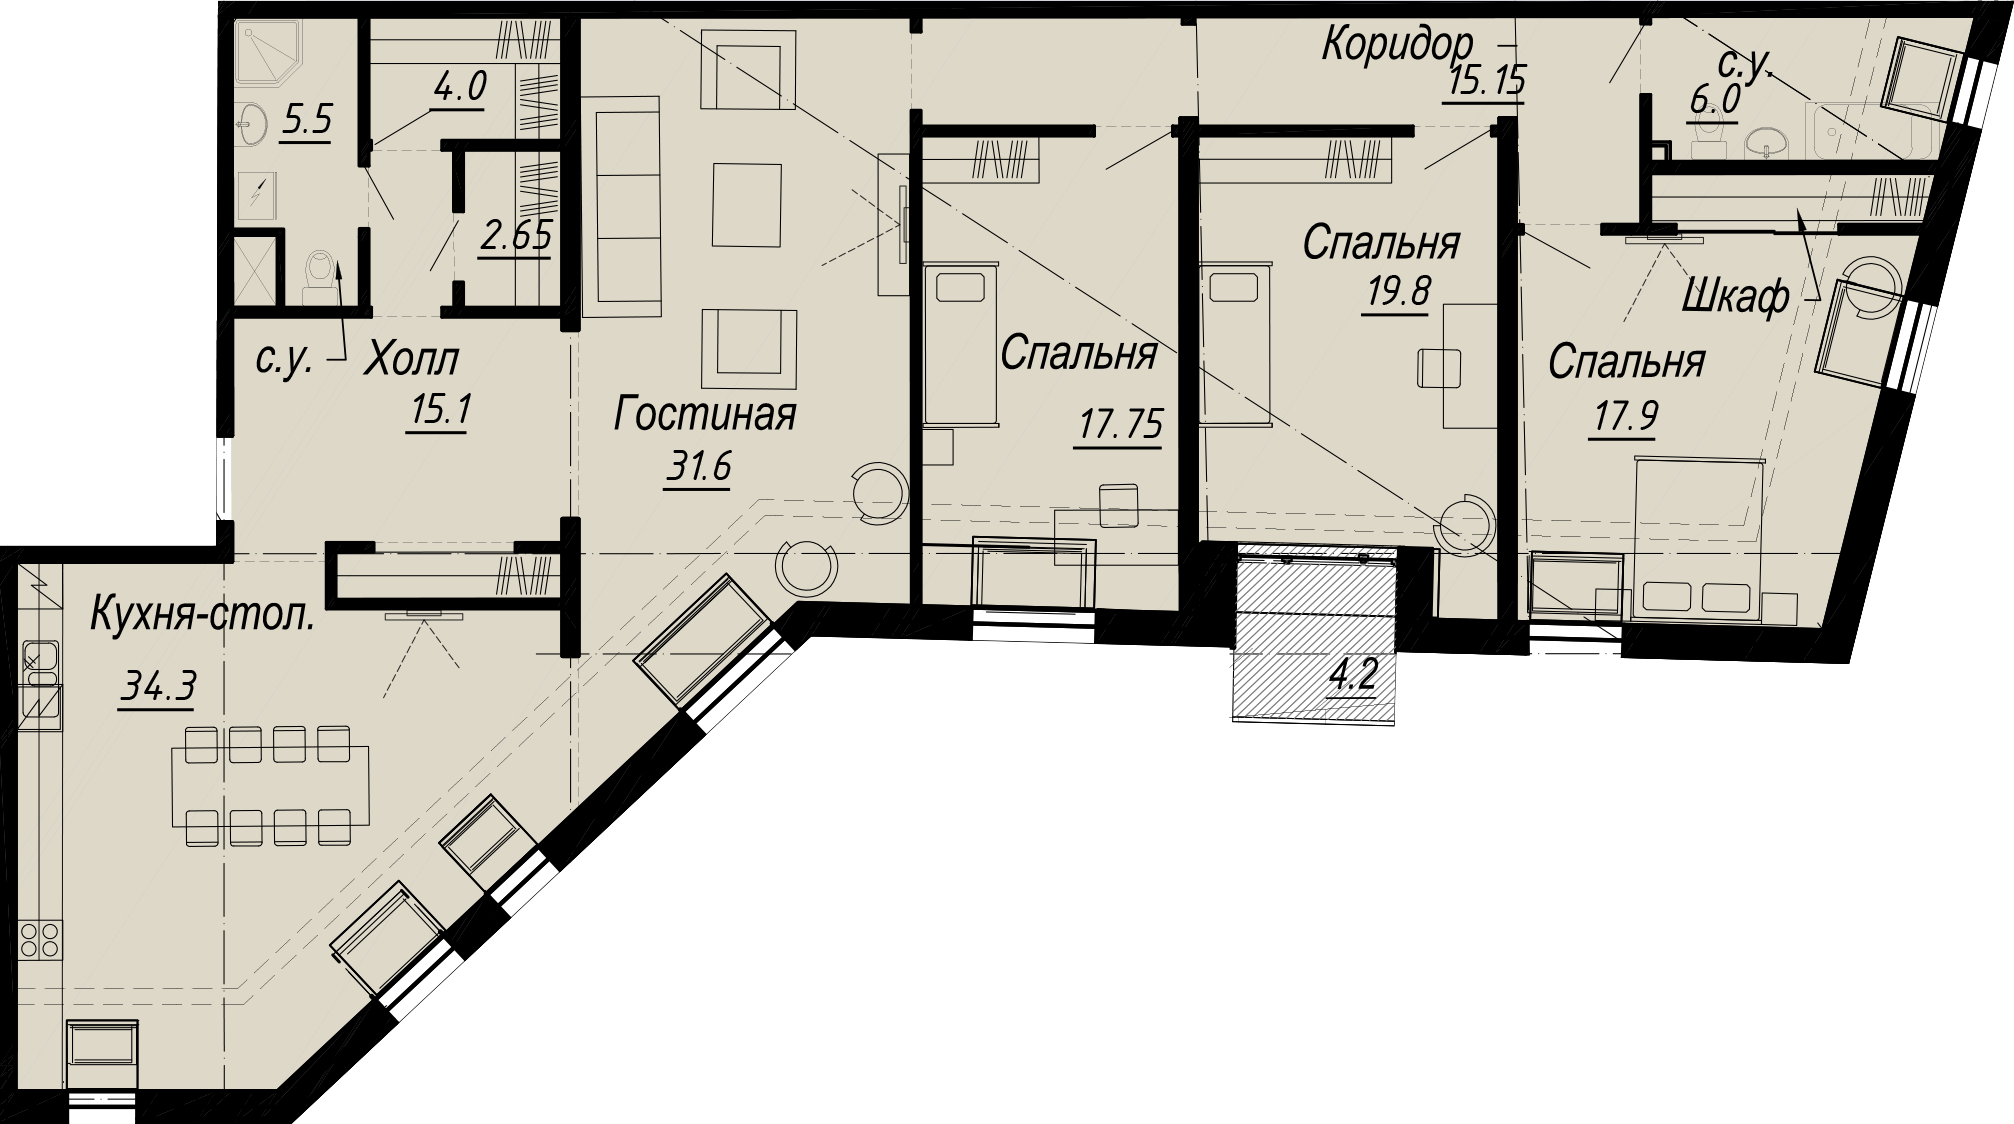 4-комнатная квартира  №7-7 в Meltzer Hall: 174.12 м², этаж 7 - купить в Санкт-Петербурге